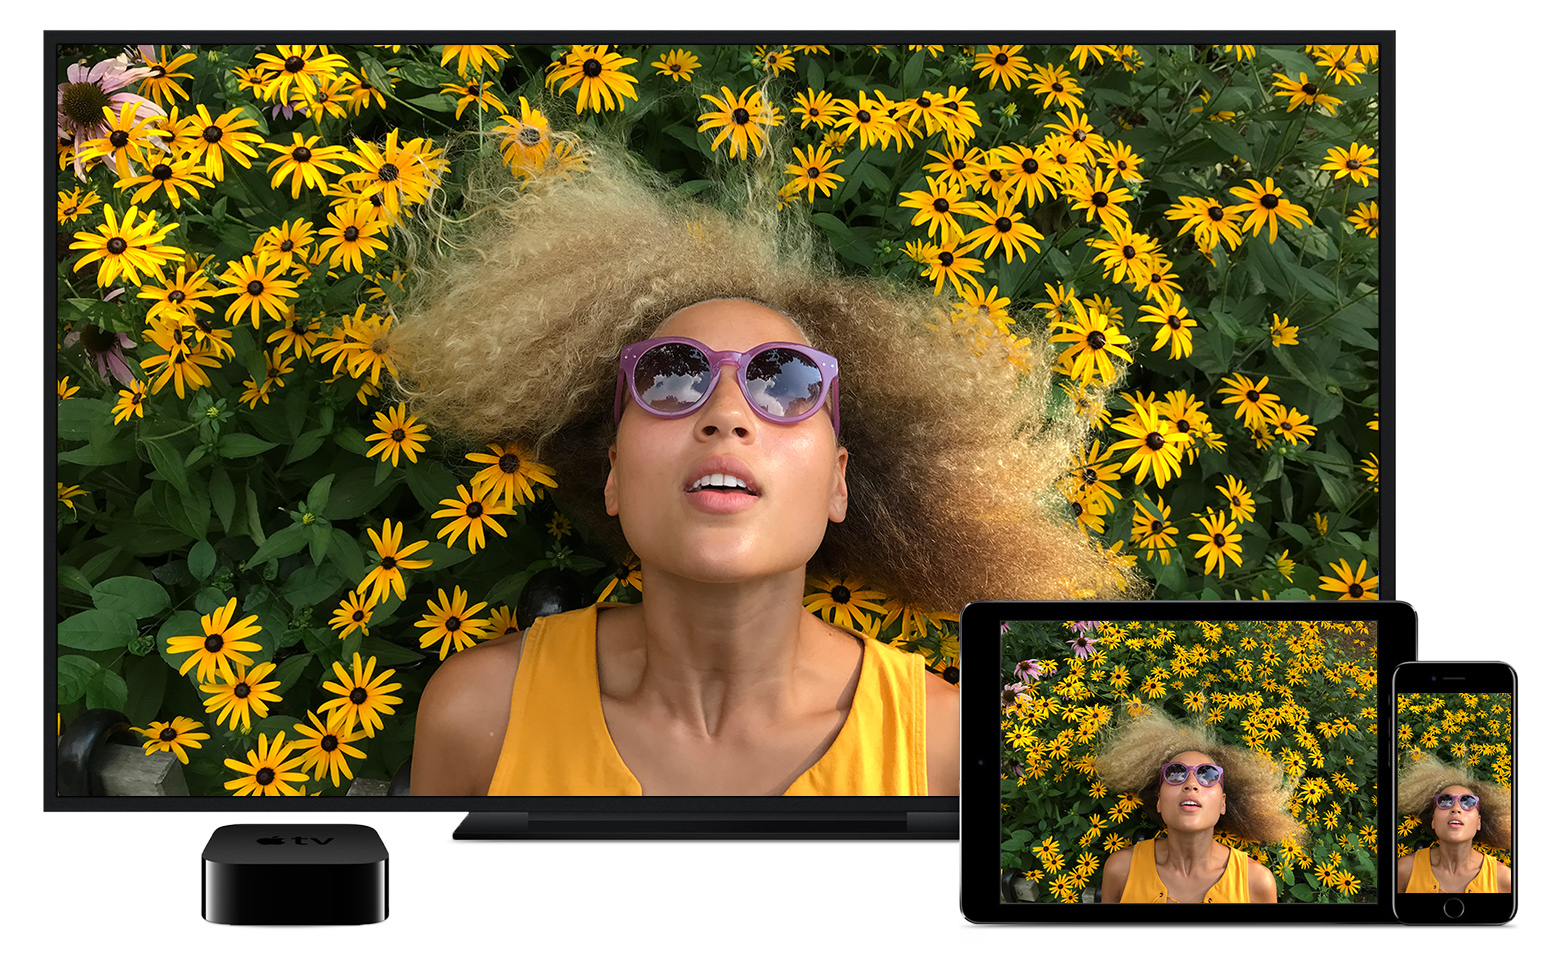 Consigli su come riprodurre video con AirPlay da iPhone, iPad o iPod touch